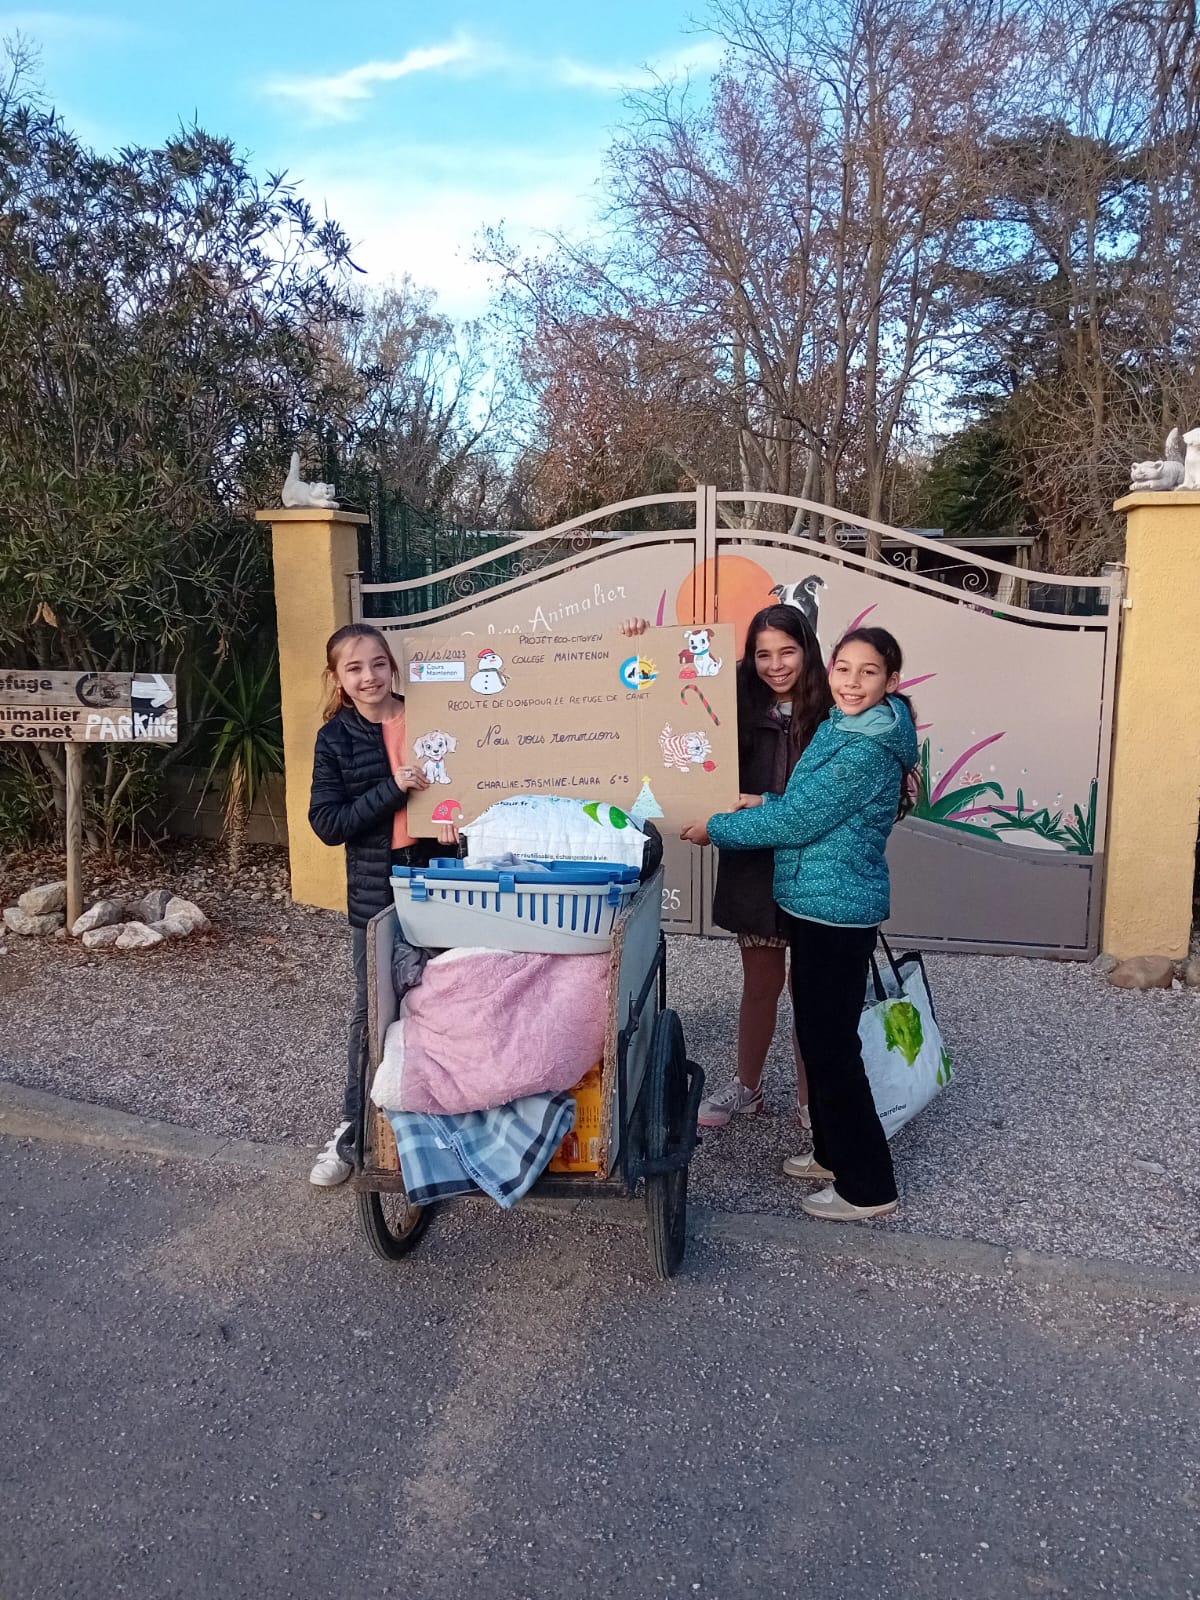 Collecte de dons pour le refuge animalier de Canet-en-Roussillon